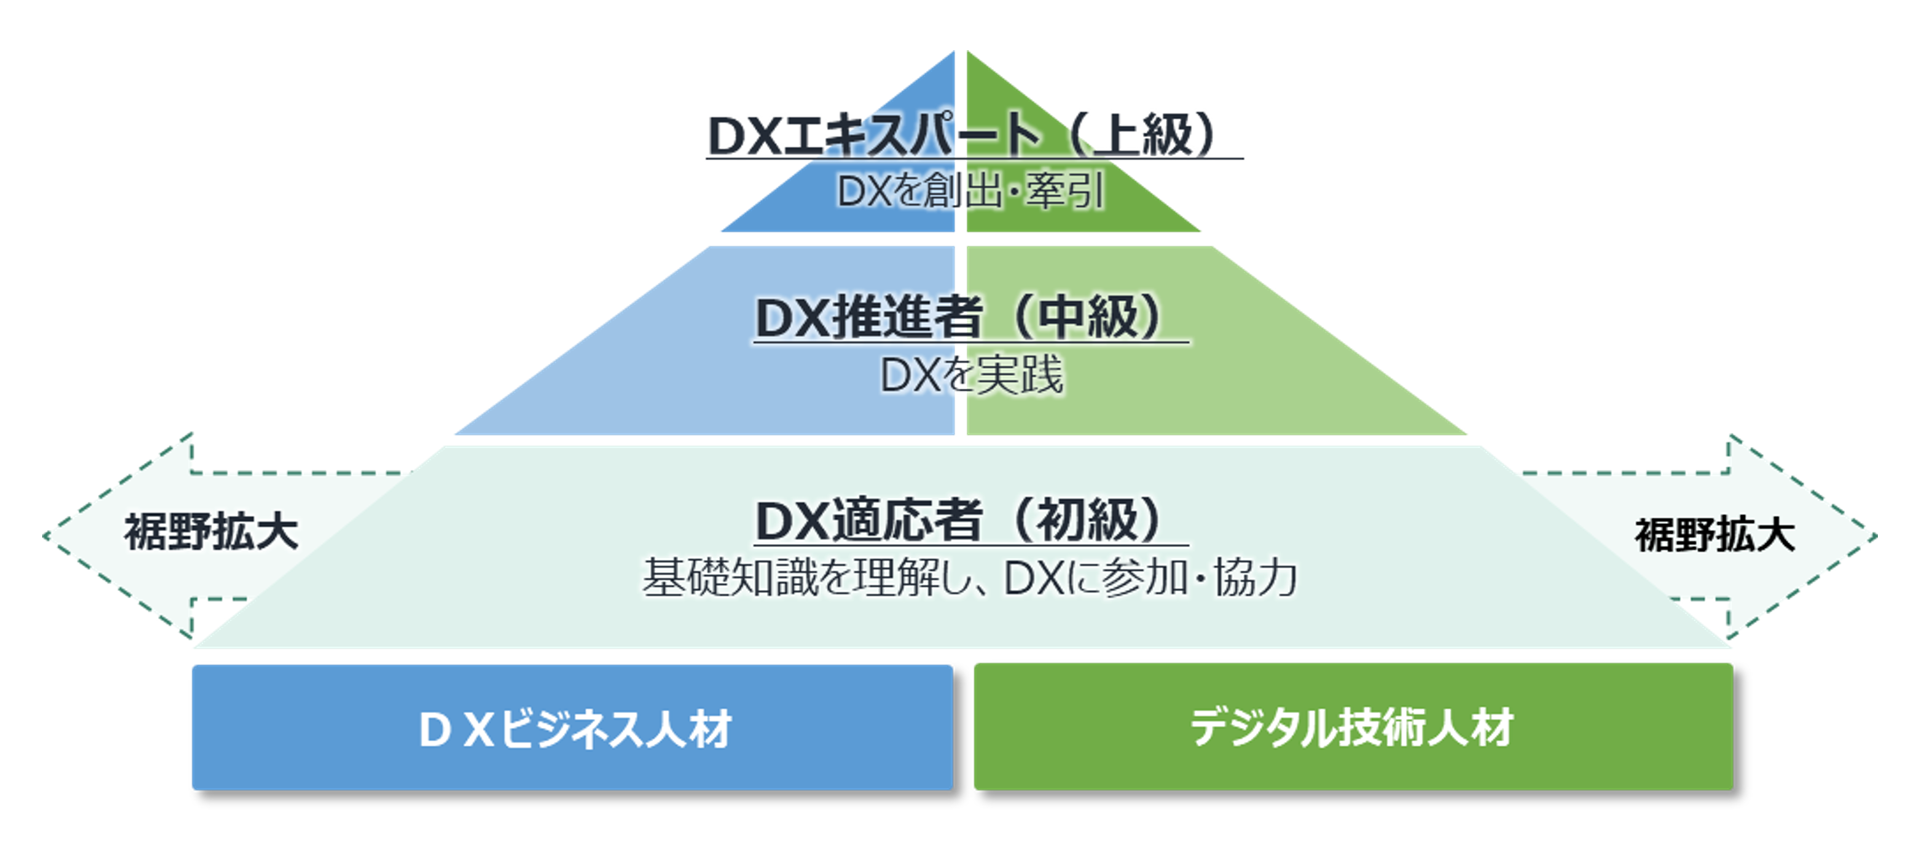 DXビジネス人材、デジタル技術人材